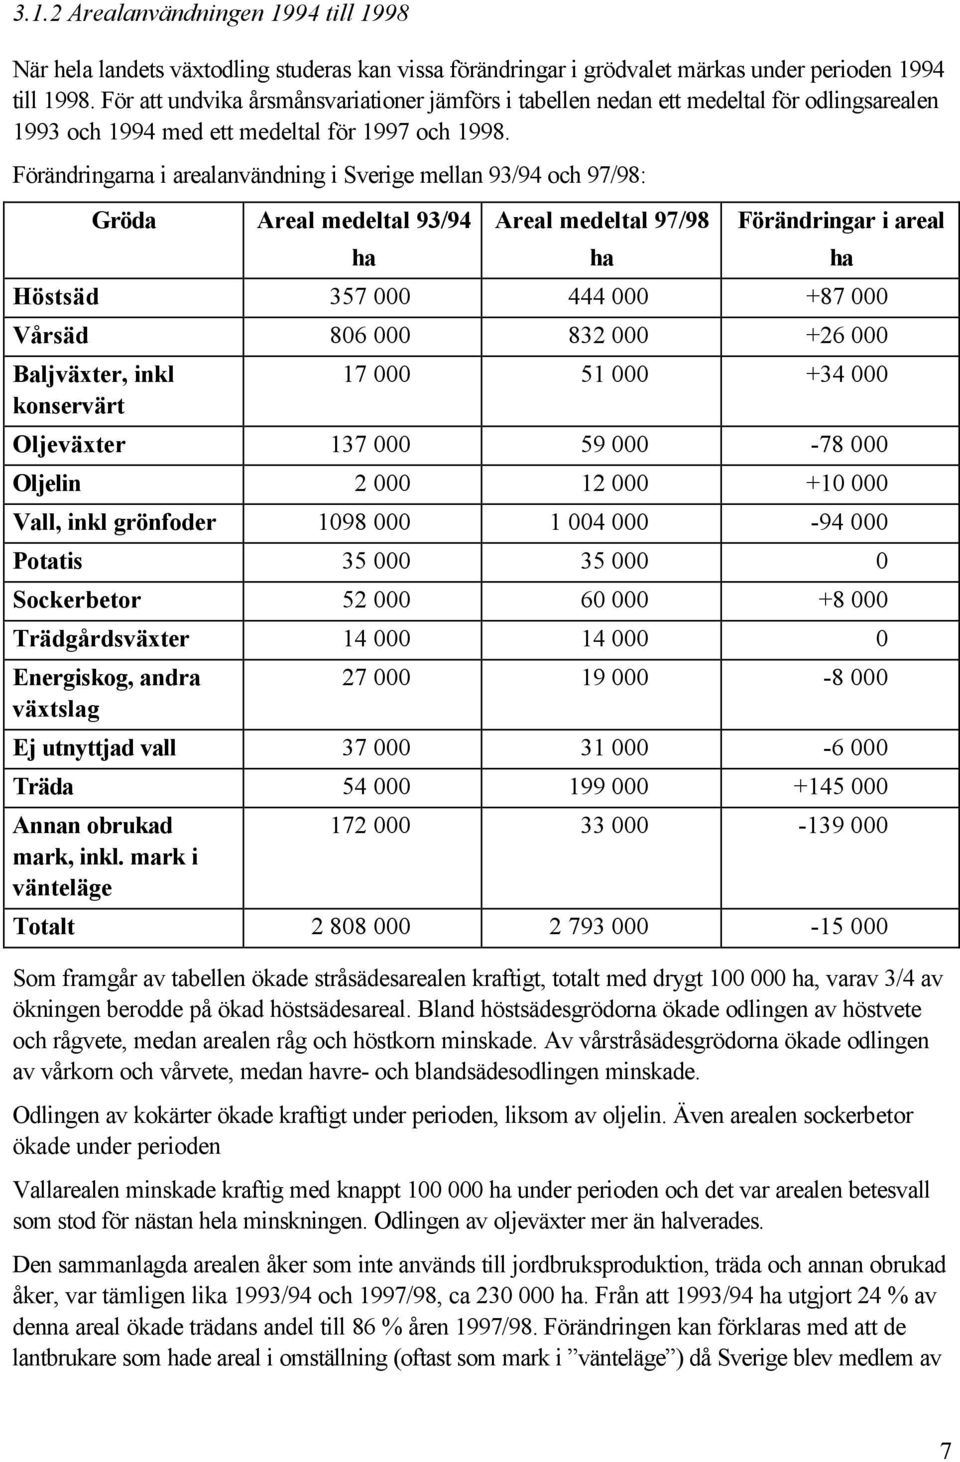 Förändringarna i arealanvändning i Sverige mellan 93/94 och 97/98: Gröda Areal medeltal 93/94 ha Areal medeltal 97/98 ha Förändringar i areal Höstsäd 357 000 444 000 +87 000 Vårsäd 806 000 832 000